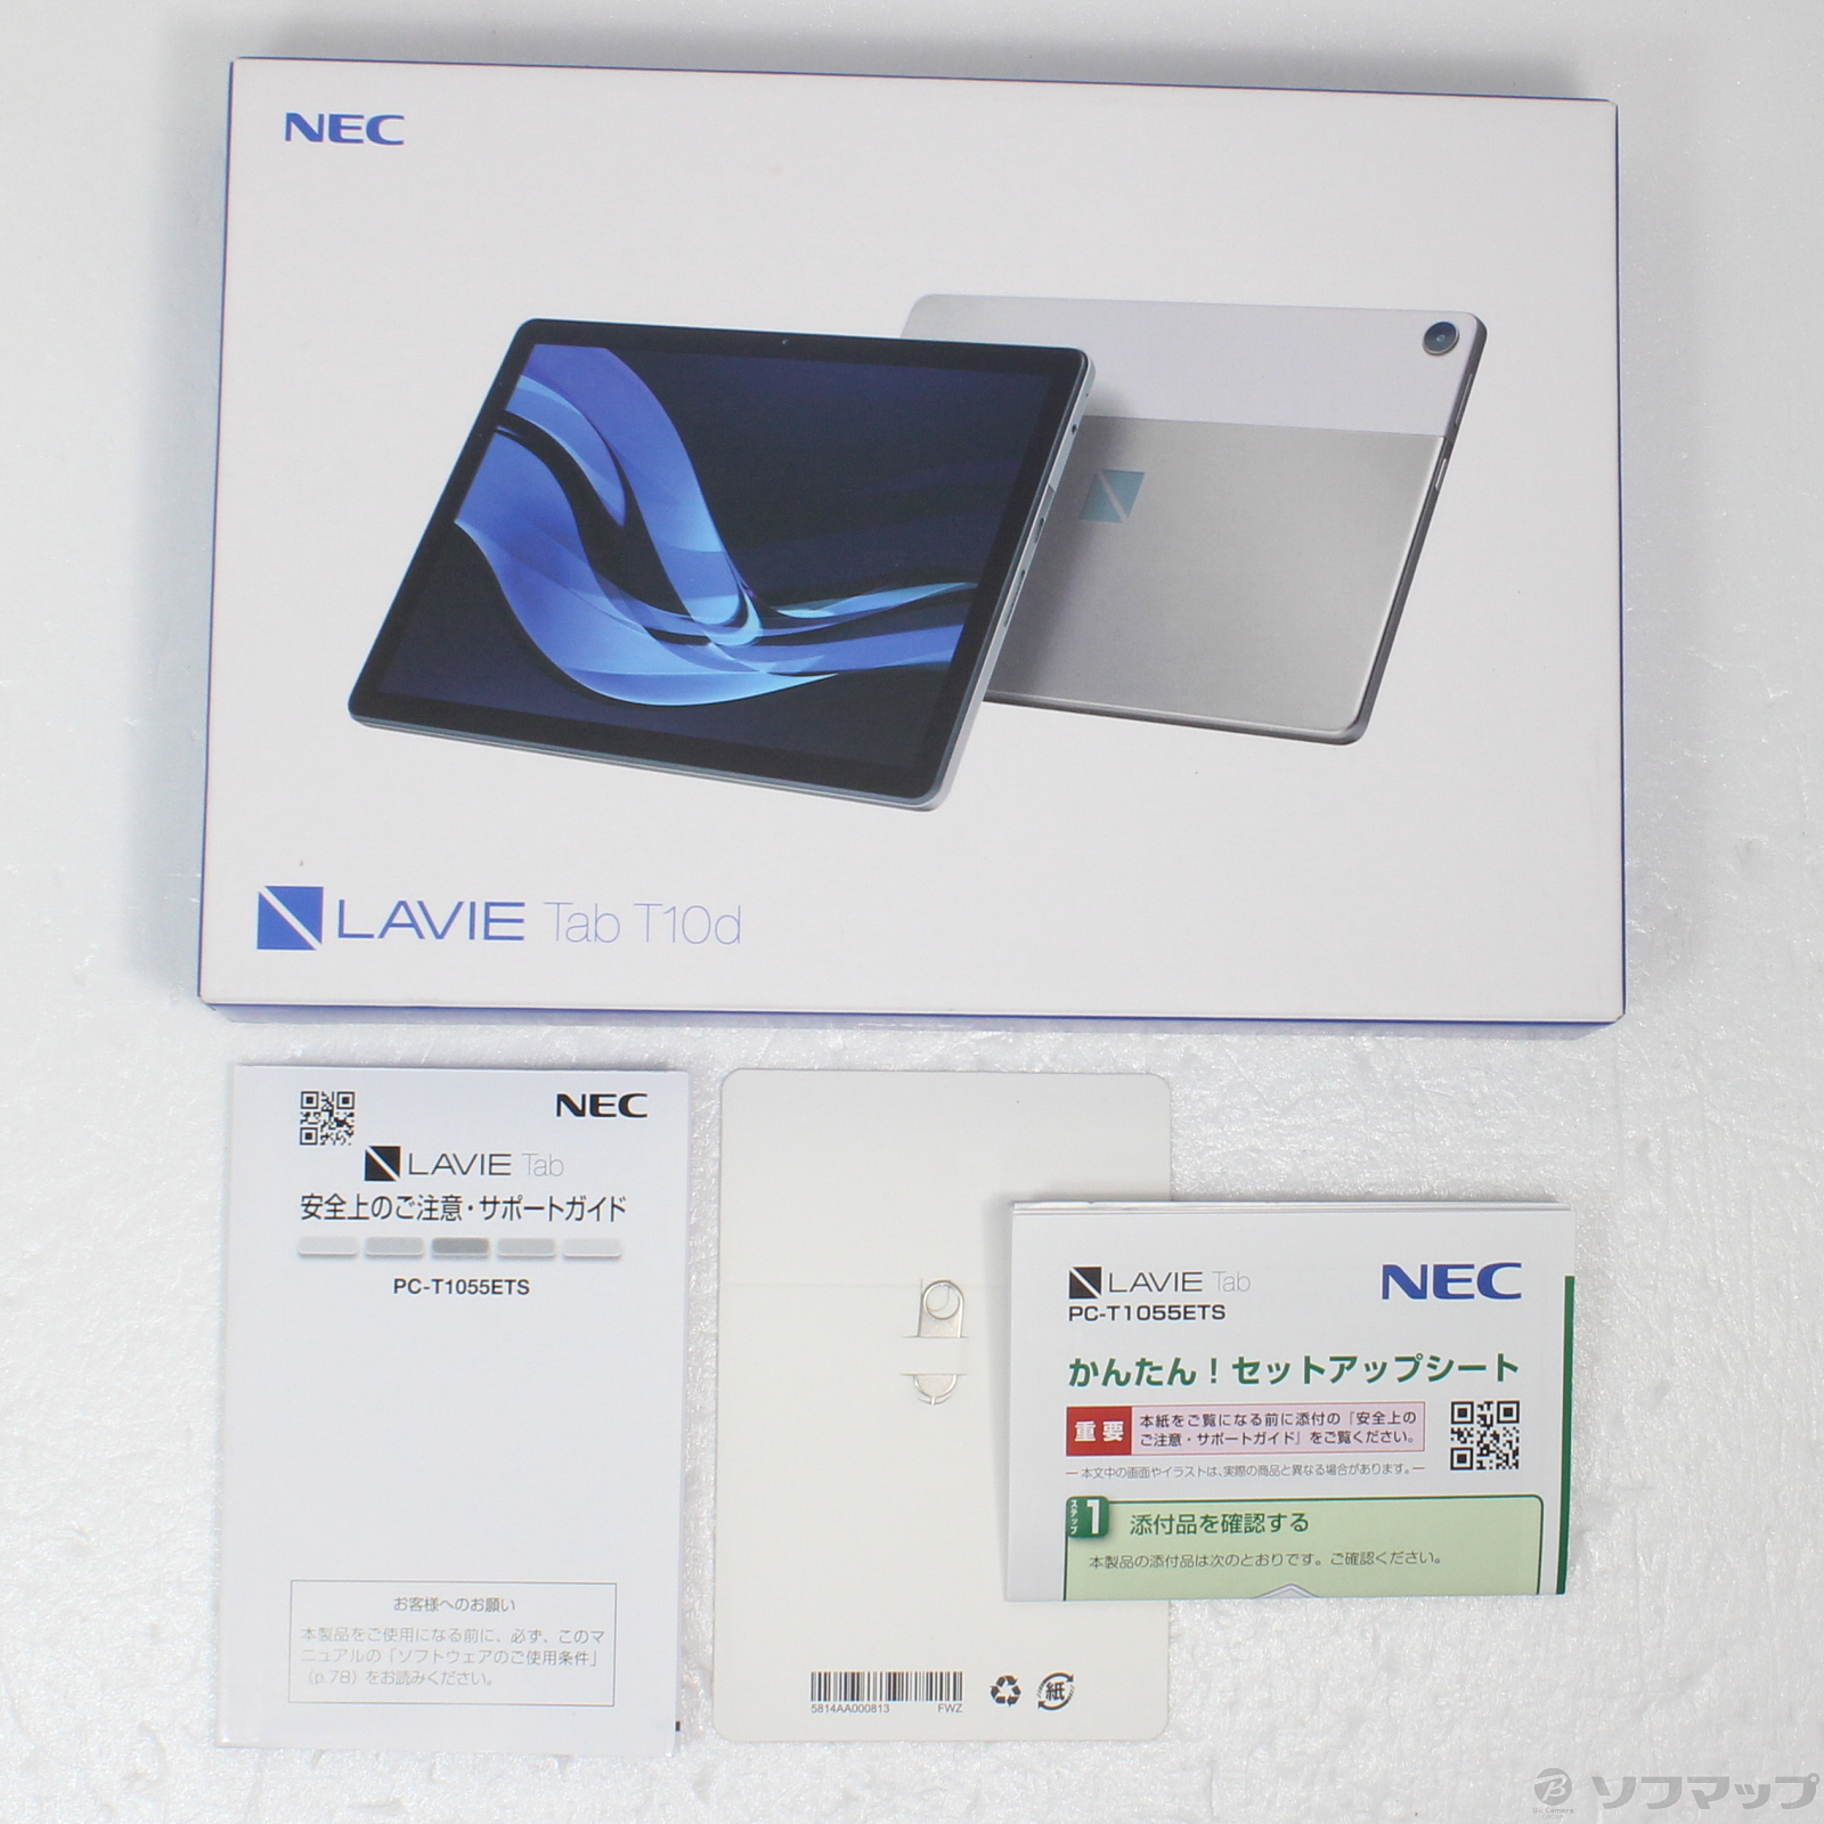 激安通販販売 LAVIE Tab T10d PC-T1055ETS プラチナグレー NEC タブレット 10.1型ワイド RAM 4GB／ROM  64GB NEC Wi-Fi - tokyo-bunka.com